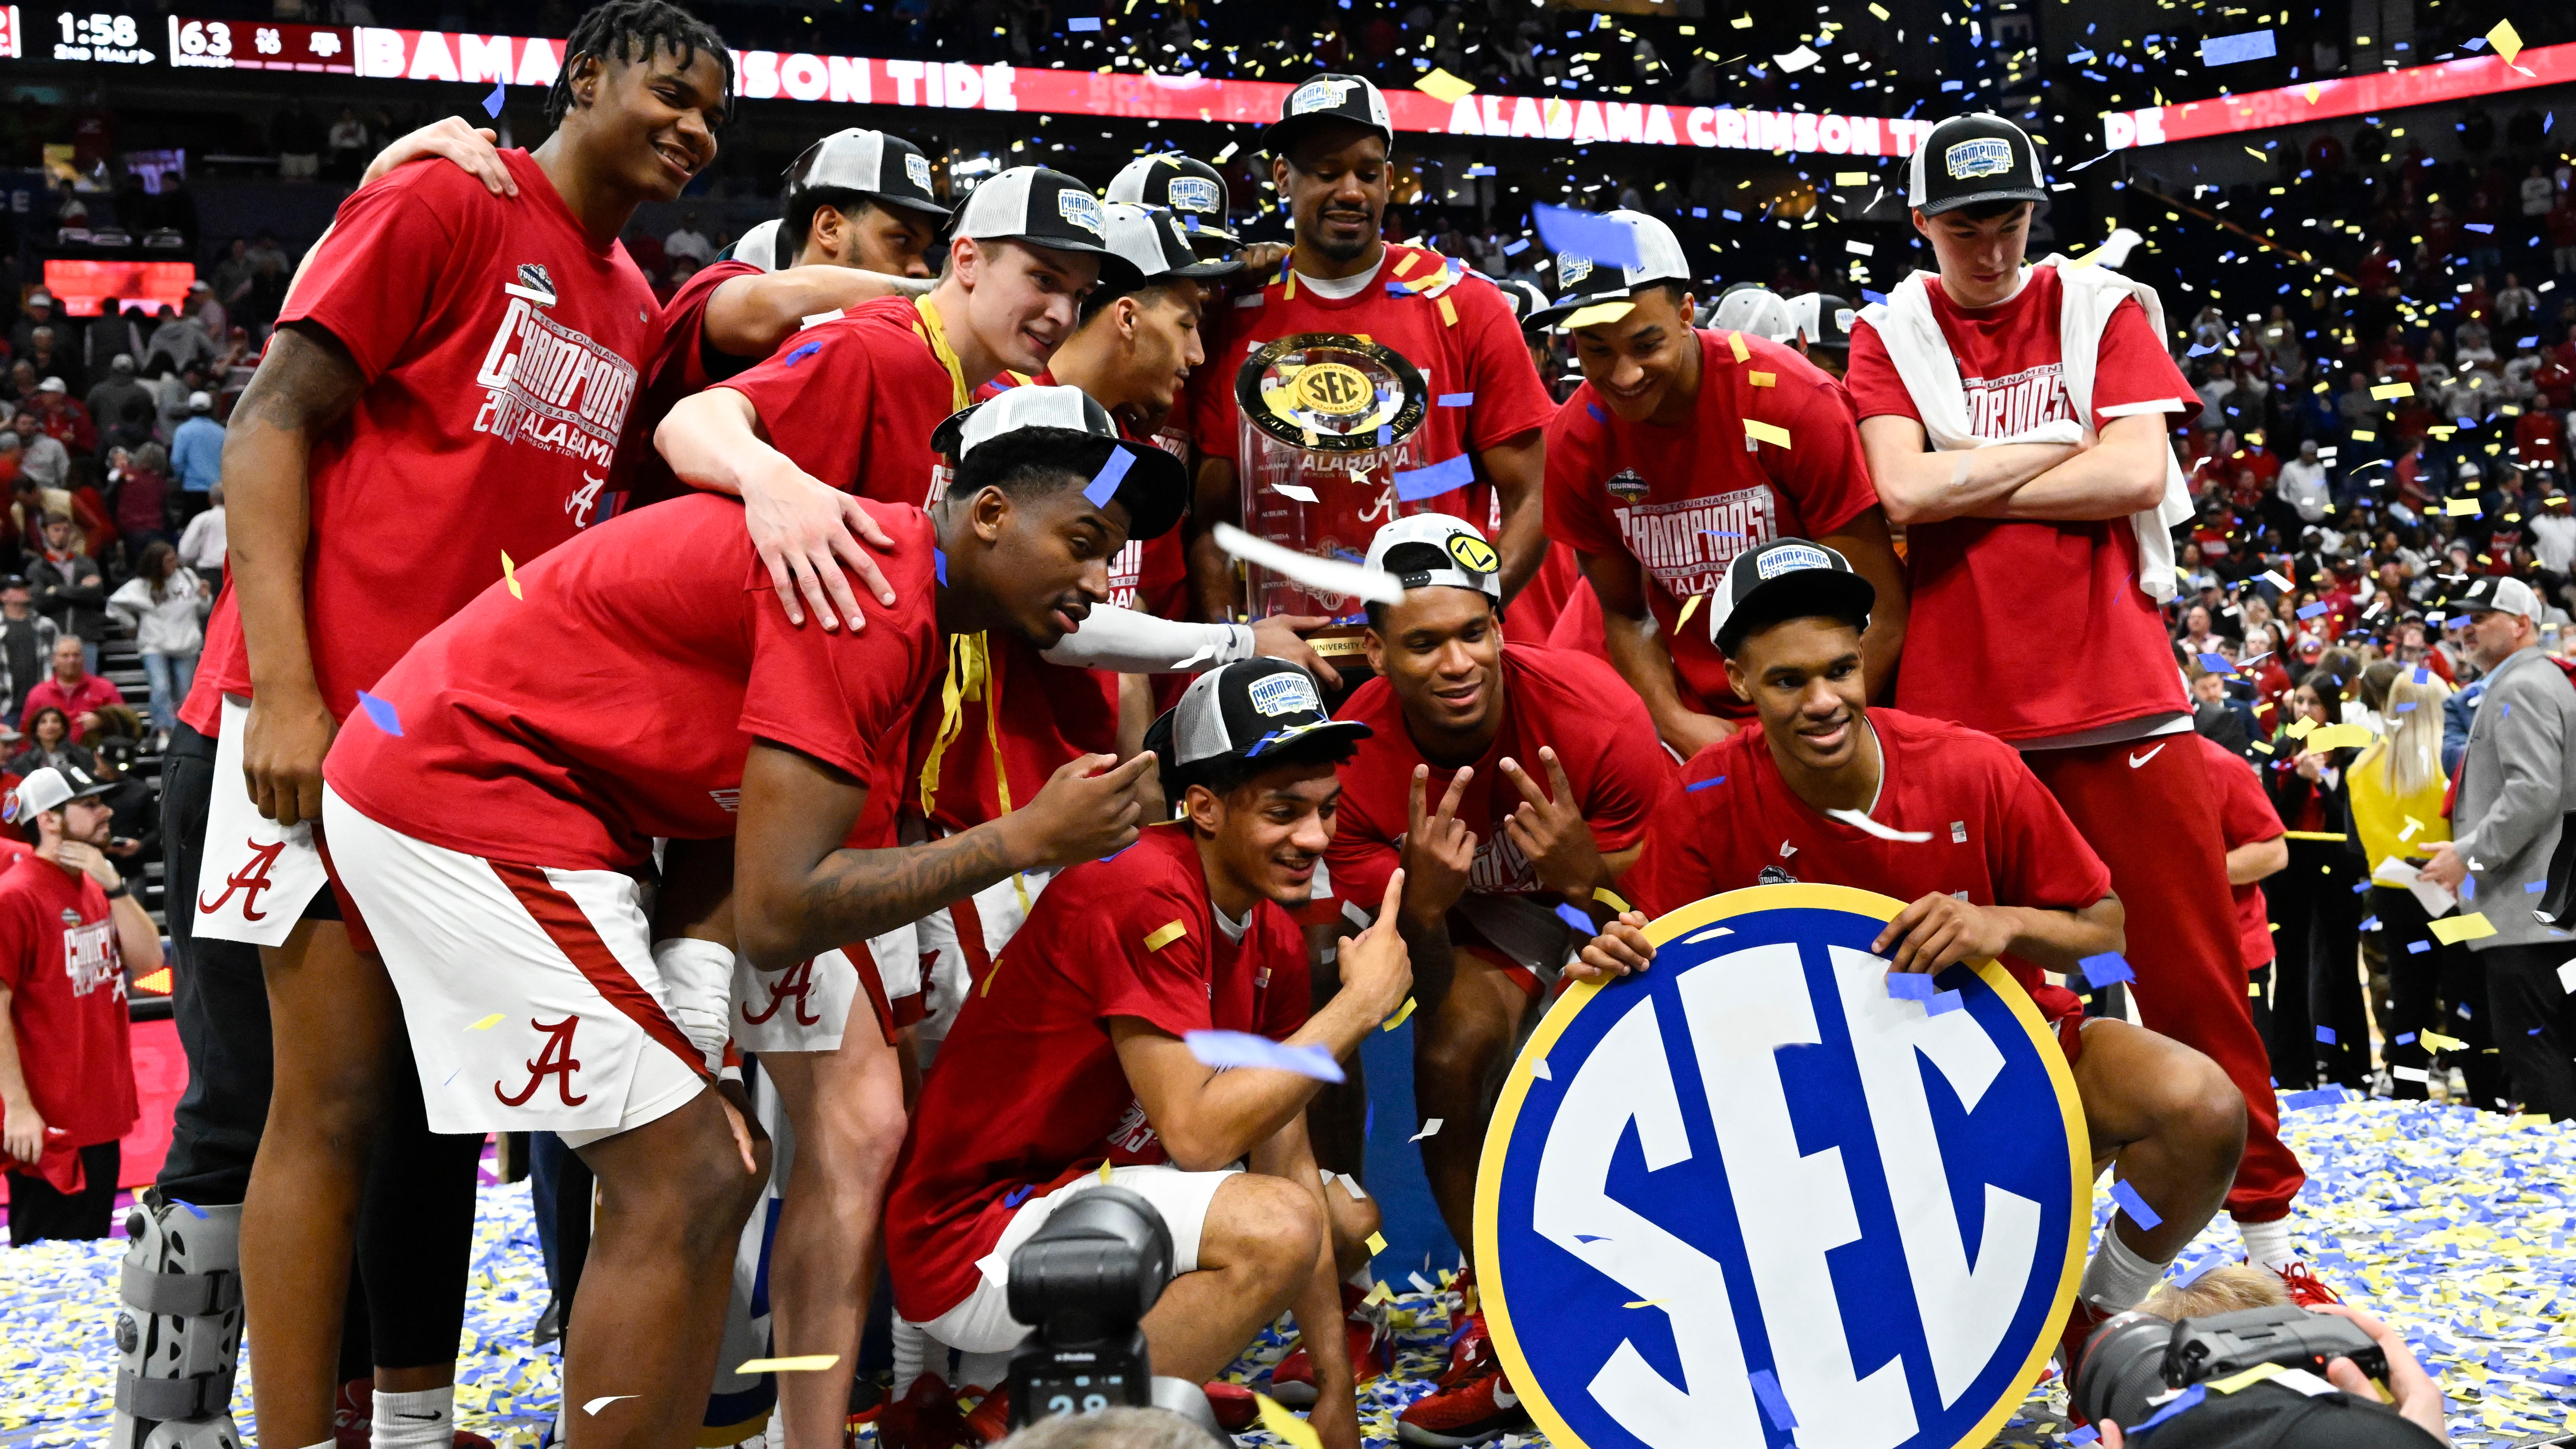 O basquete do Alabama conquistou o título do Torneio da SEC sobre o Texas A&M com uma derrota por 82-63